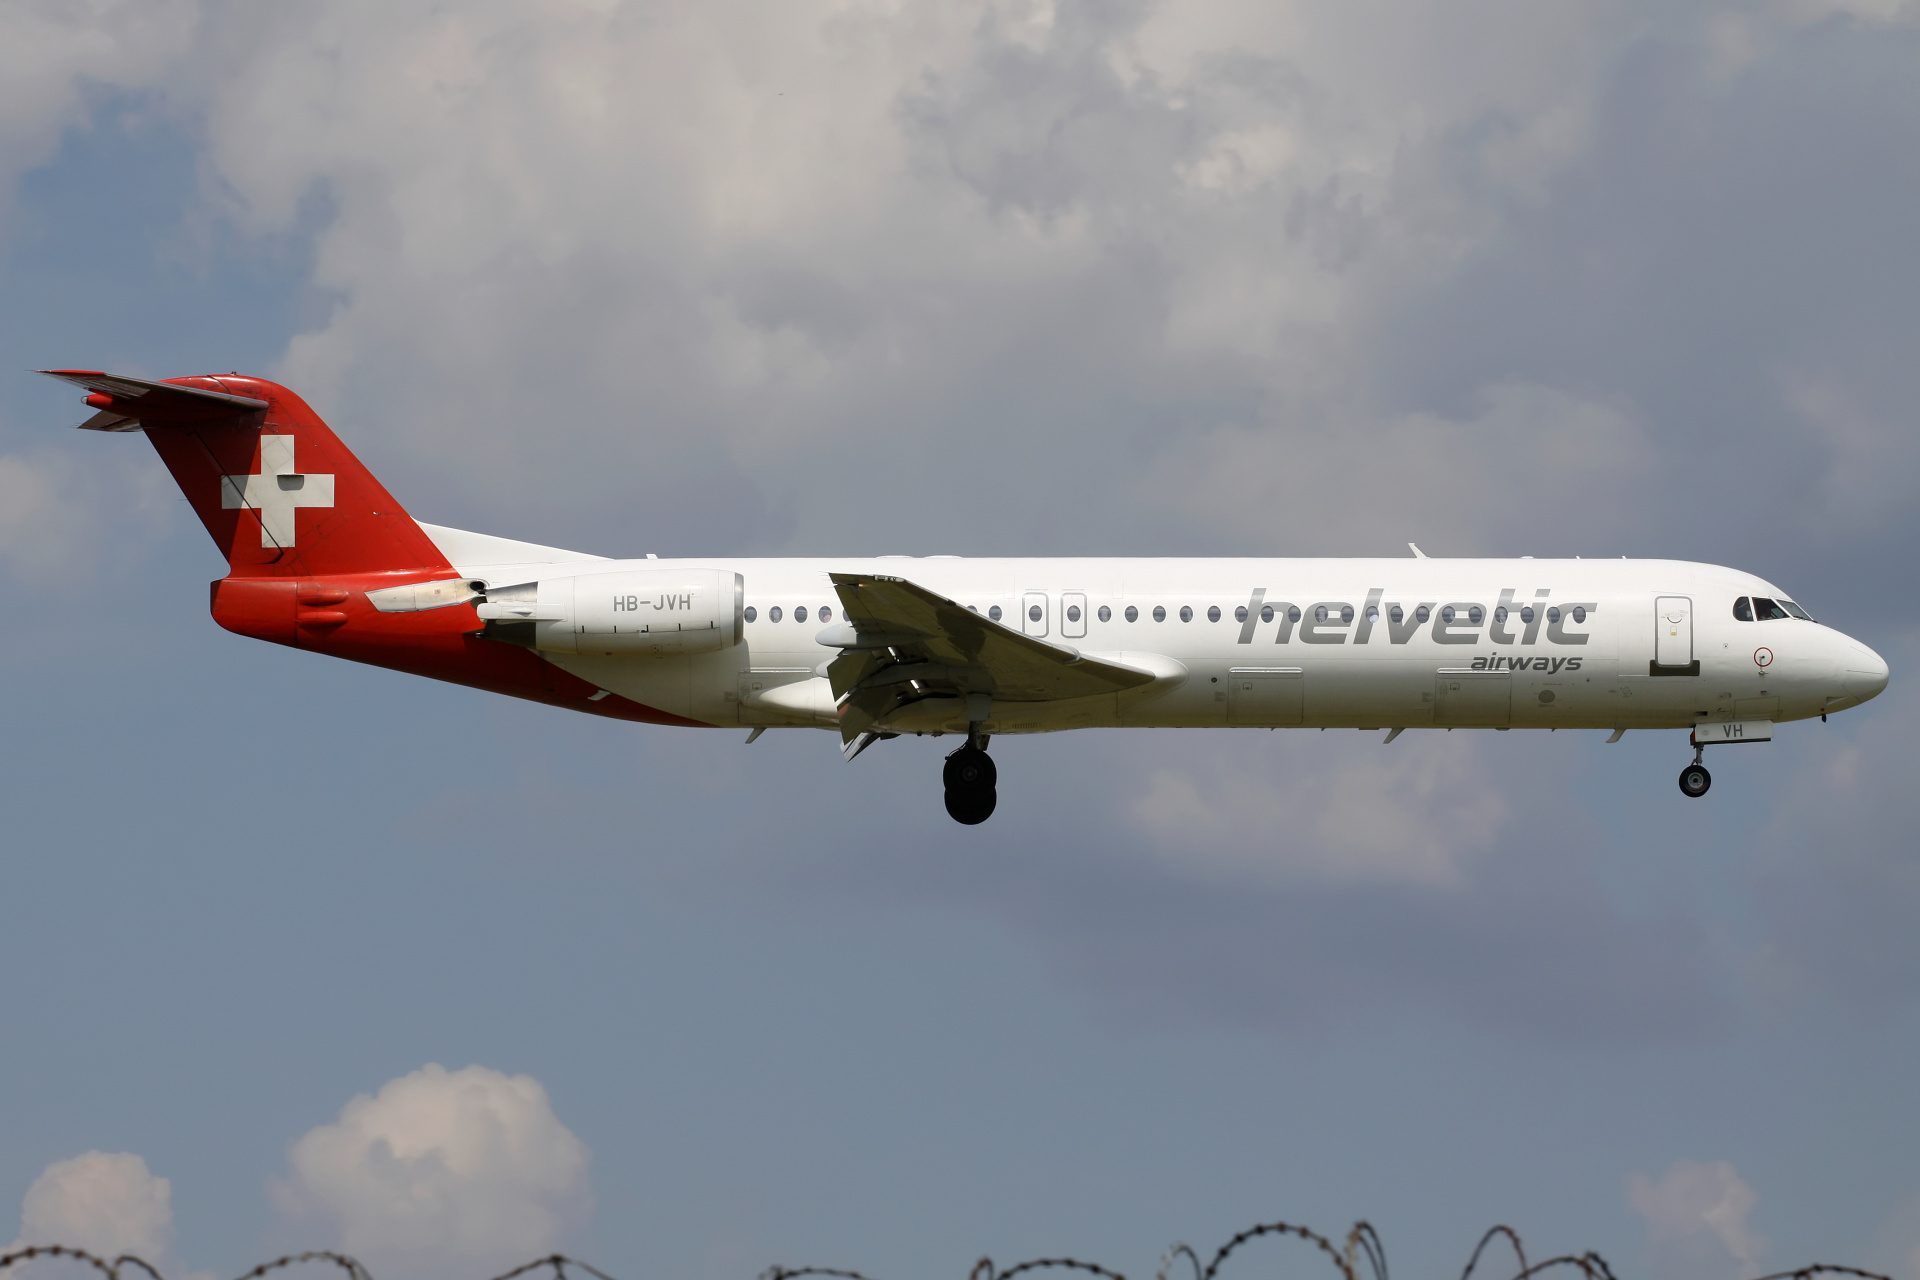 HB-JVH (Aircraft » EPWA Spotting » Fokker 100 » Helvetic Airways)